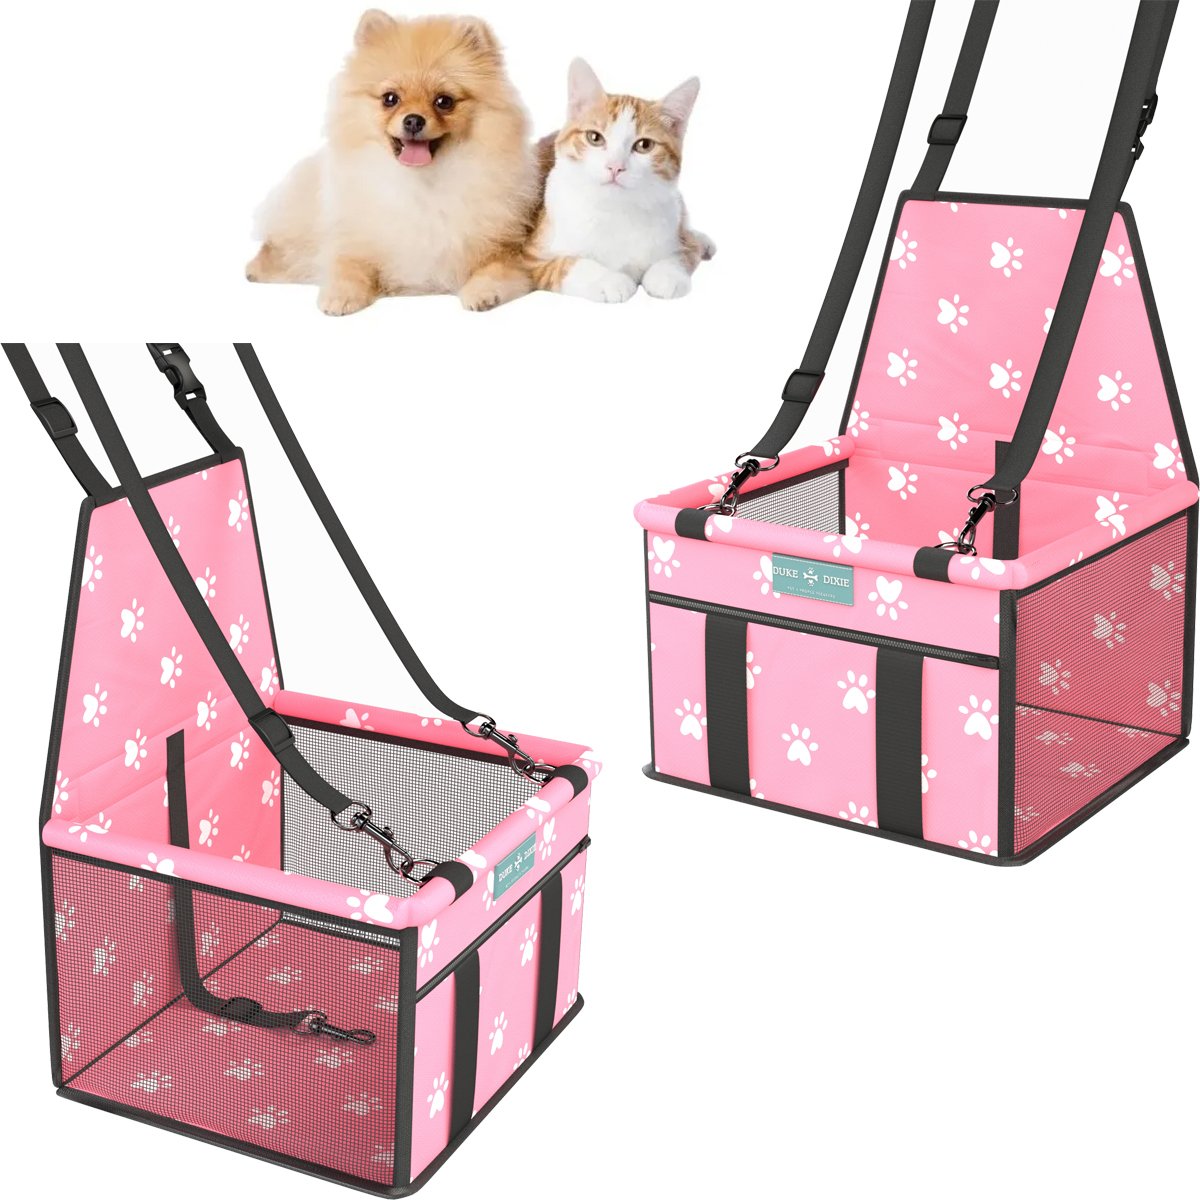 Assento Cadeirinha Cadeira Booster Pet para Carro Cães Gatos